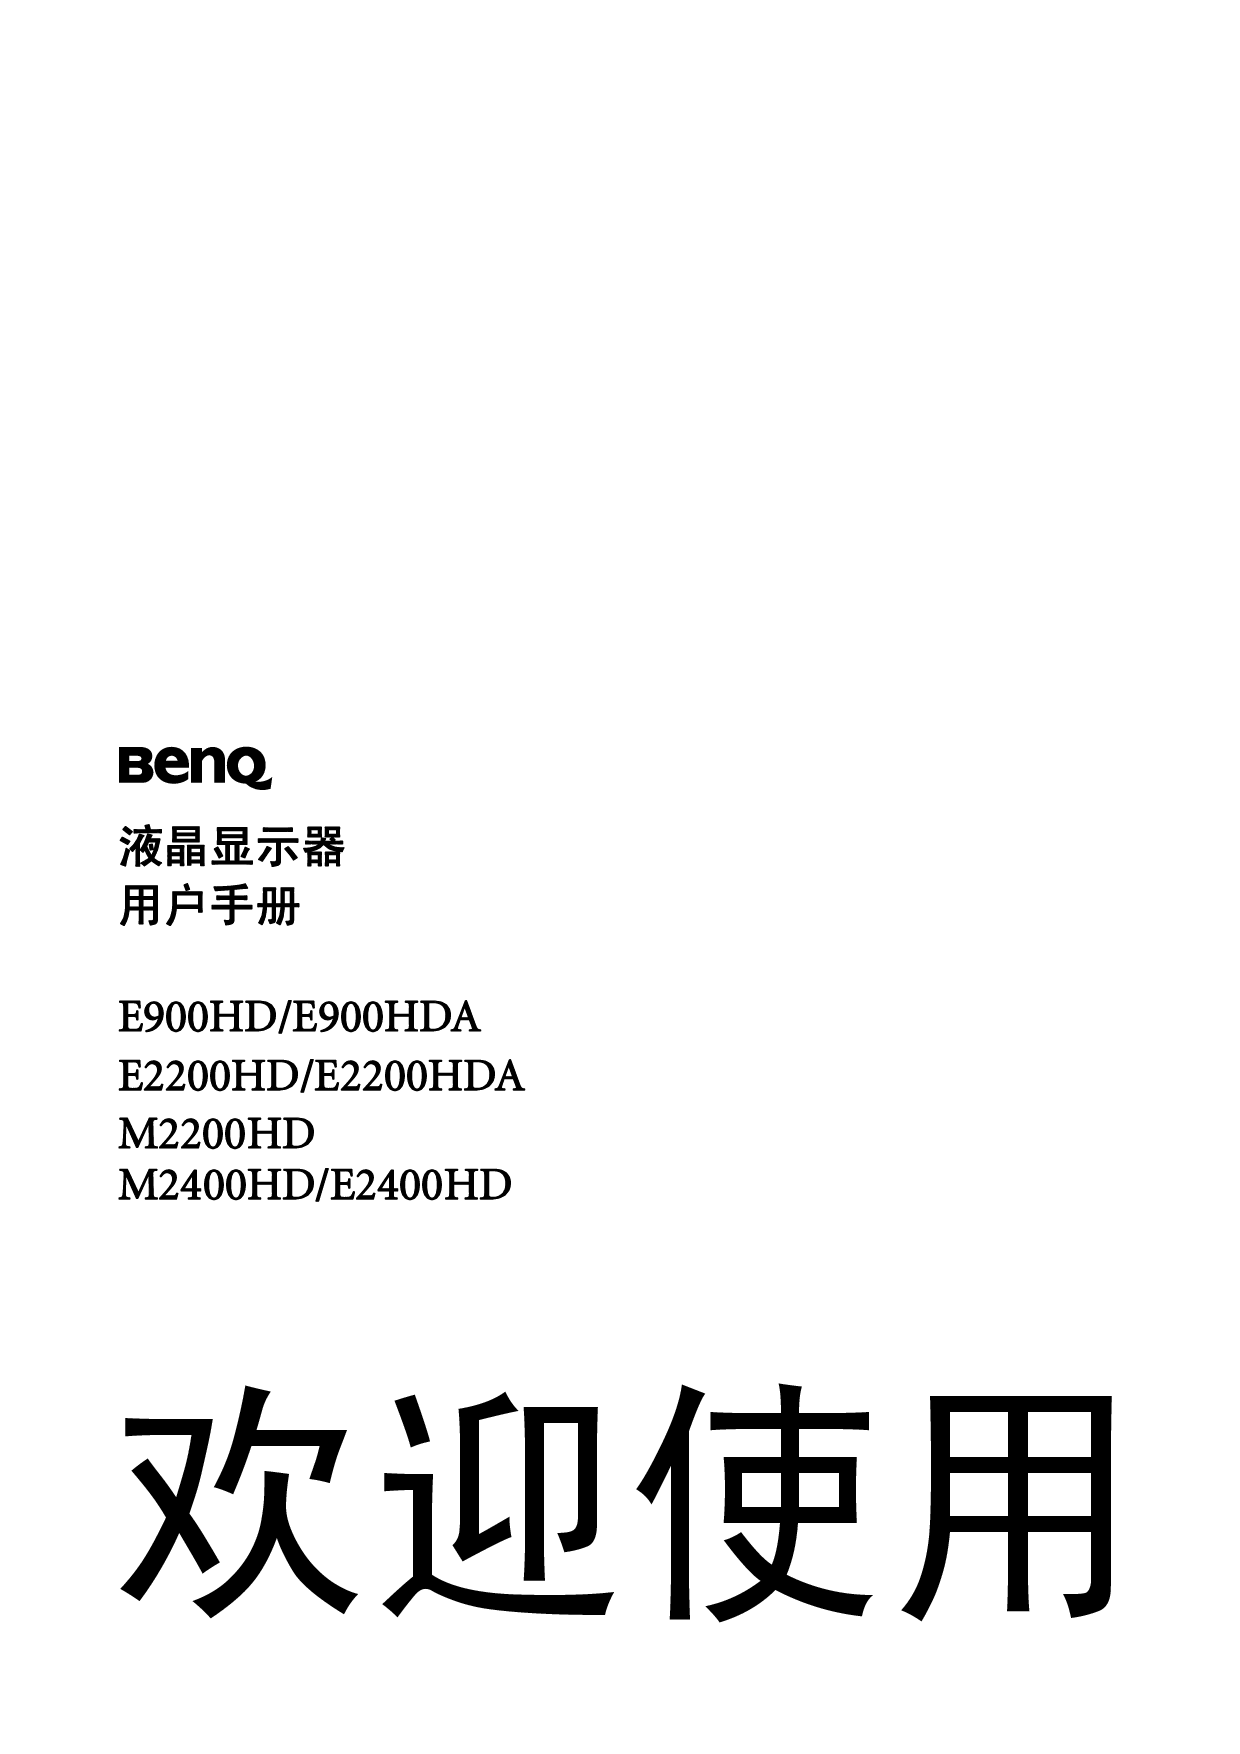 明基 Benq E2200HD 使用手册 封面